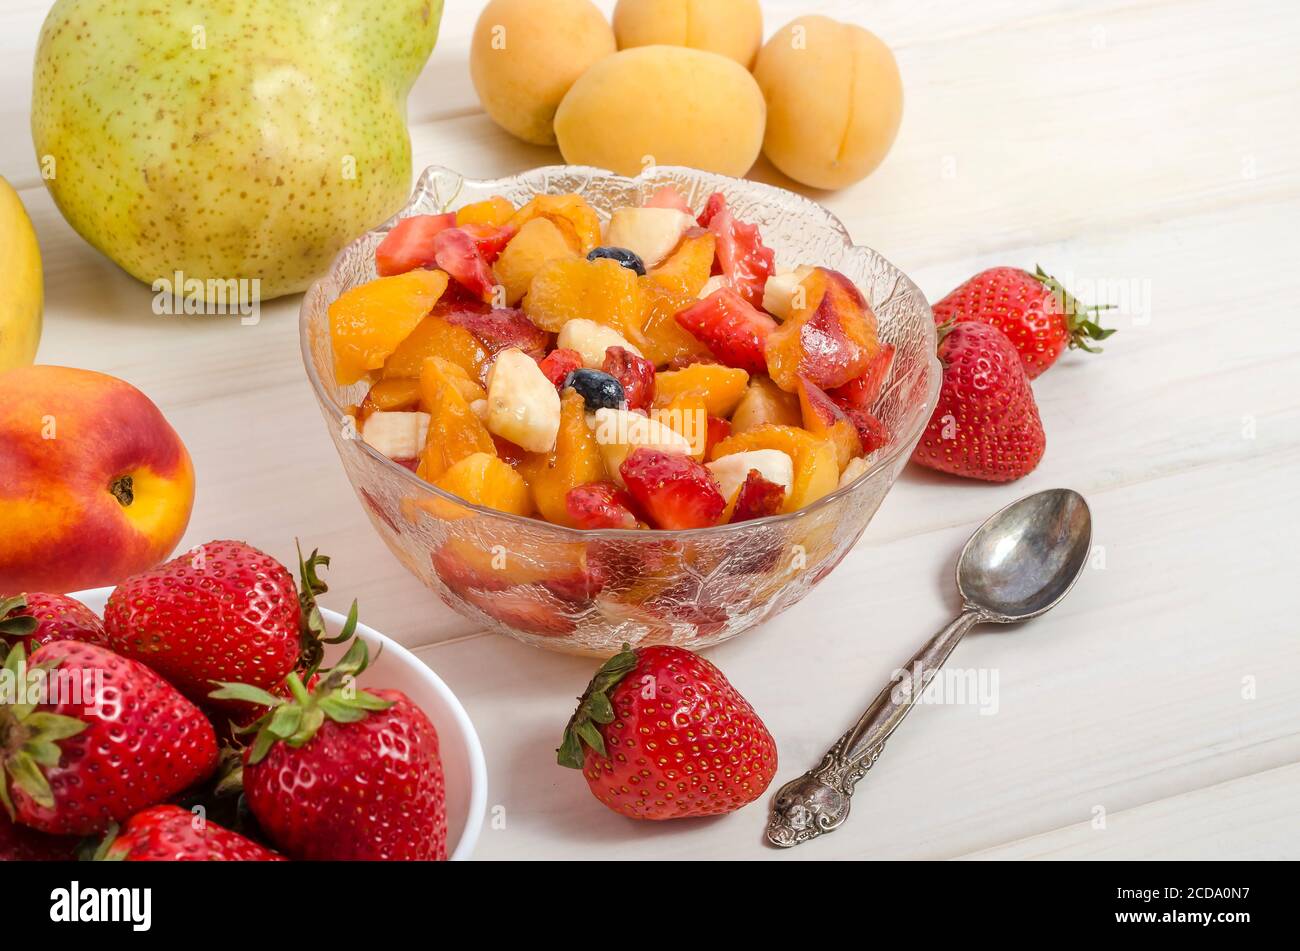 Frisches Obst und Beeren Salat in einer Schüssel close-up. Stockfoto